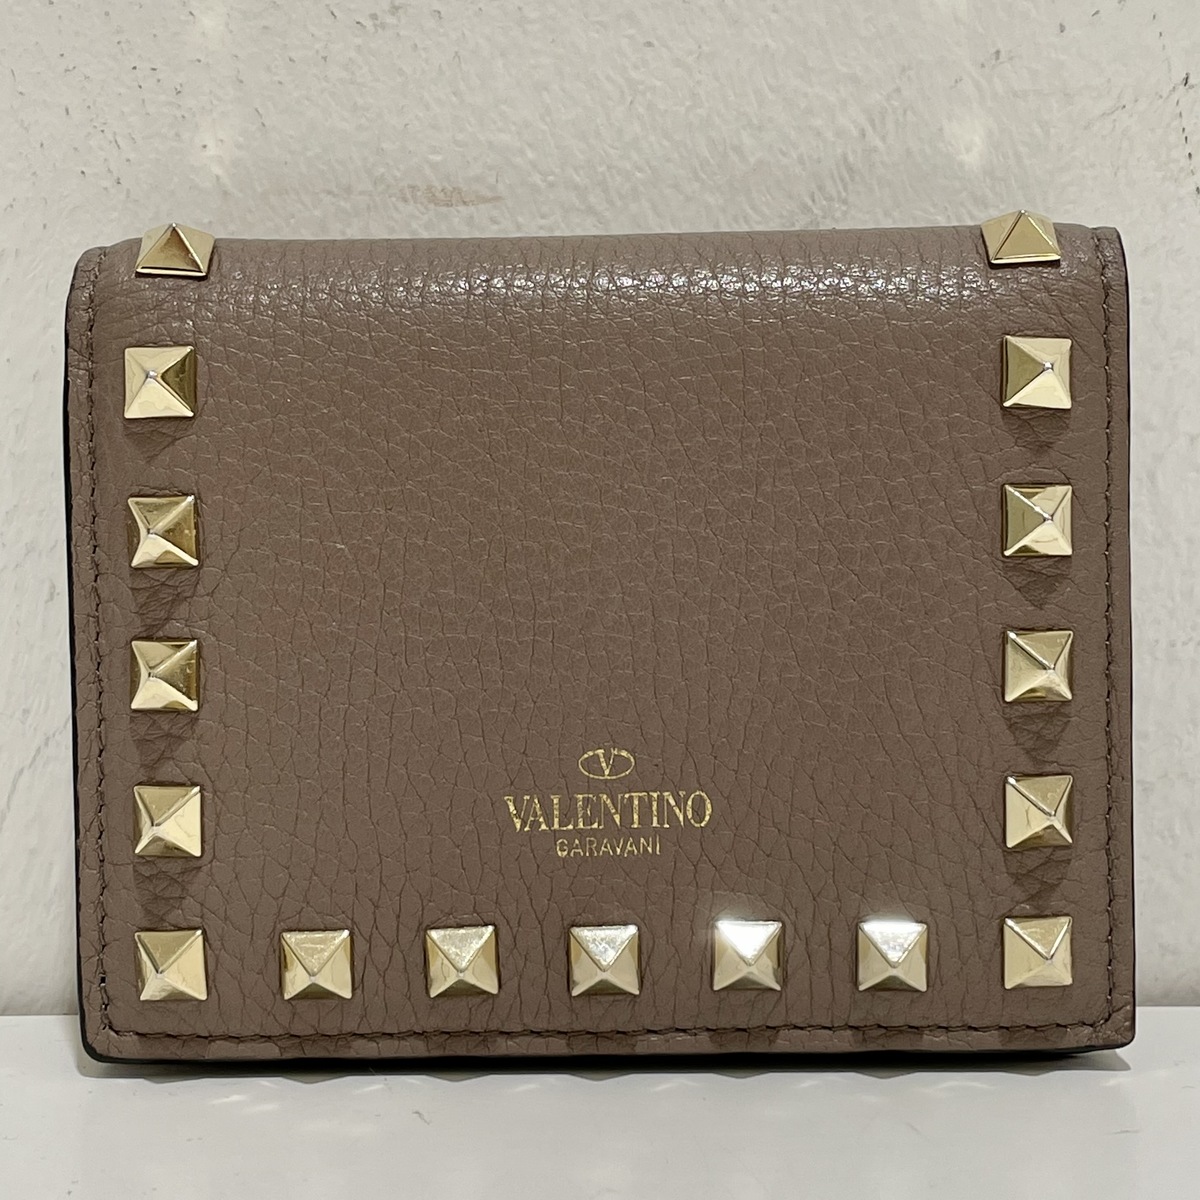 ヴァレンティノのガラヴァーニ ピラミッドスタッズ 2つ折り財布の買取実績です。